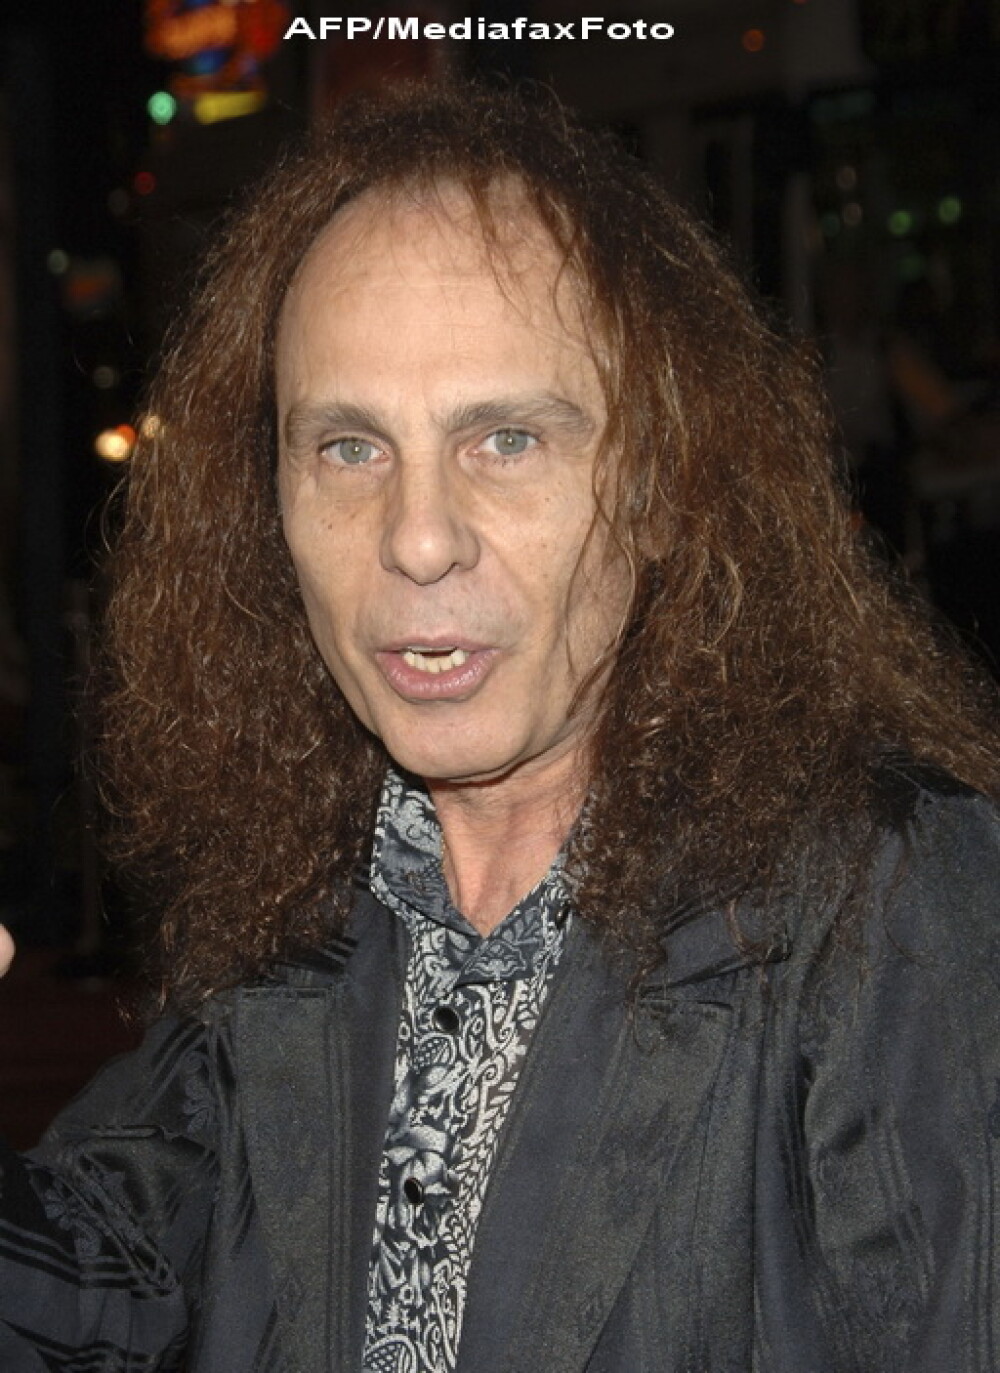 A murit un mare artist al muzicii rock: Ronnie James Dio! - Imaginea 2